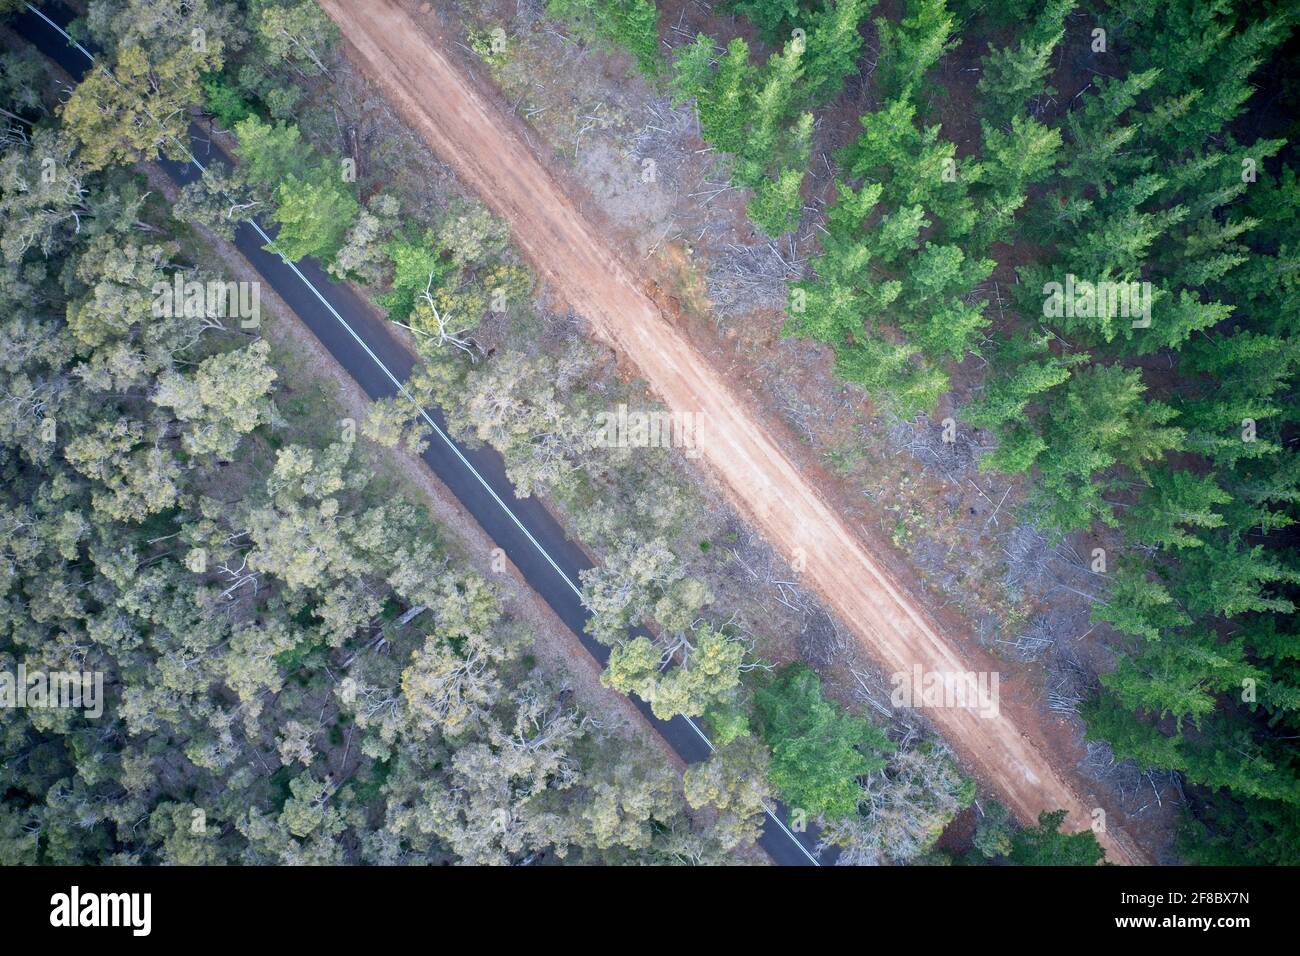 Champ de vision de drone de la forêt de pins et des schémas routiers dans la nature dans la forêt d'État de Mullalyup, Australie occidentale. Banque D'Images